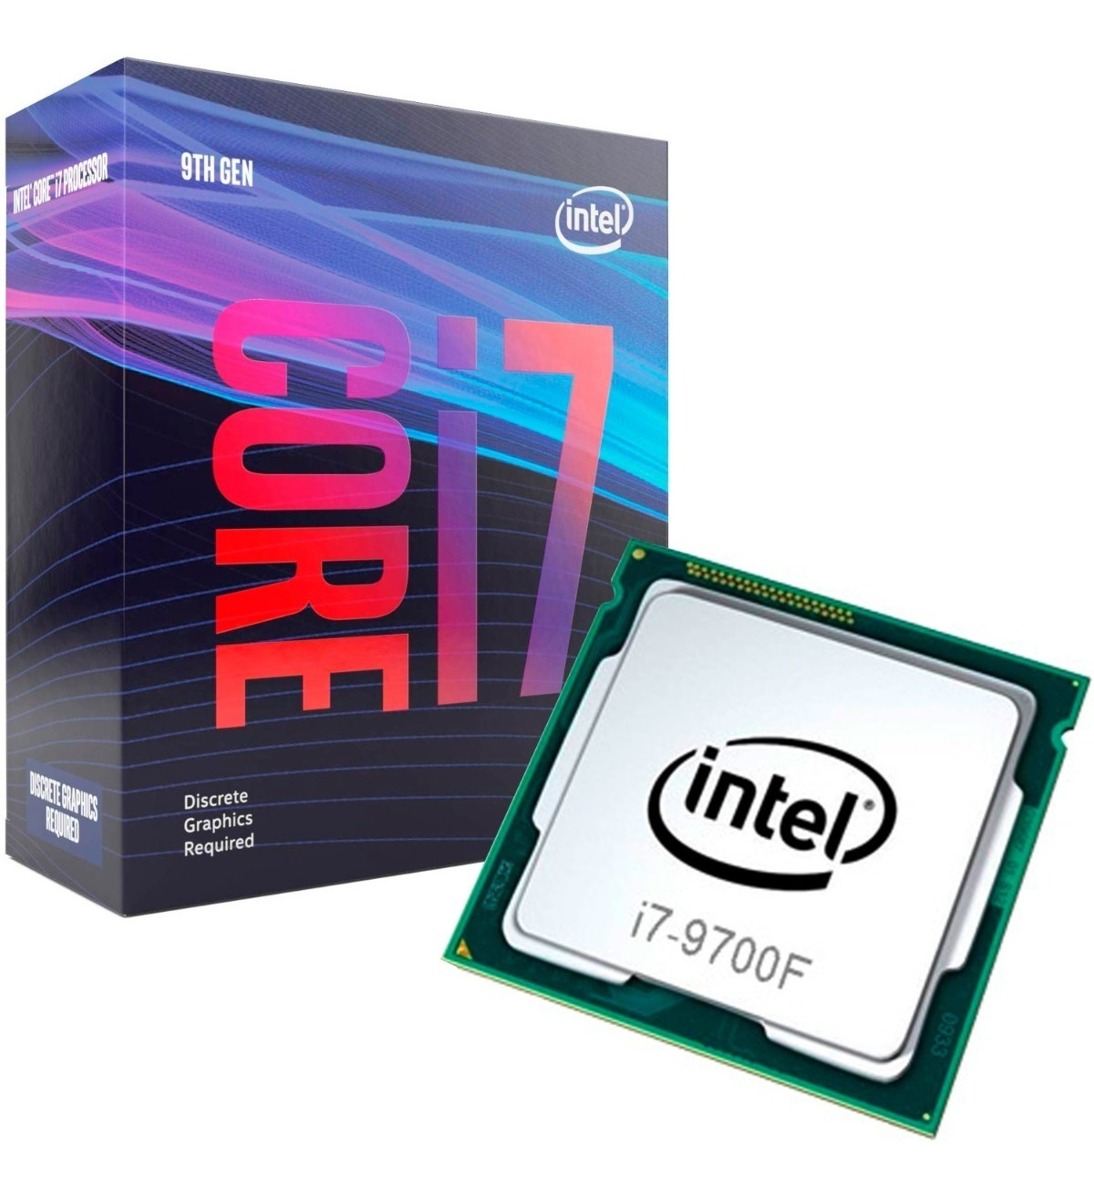 Intel CPU coolers